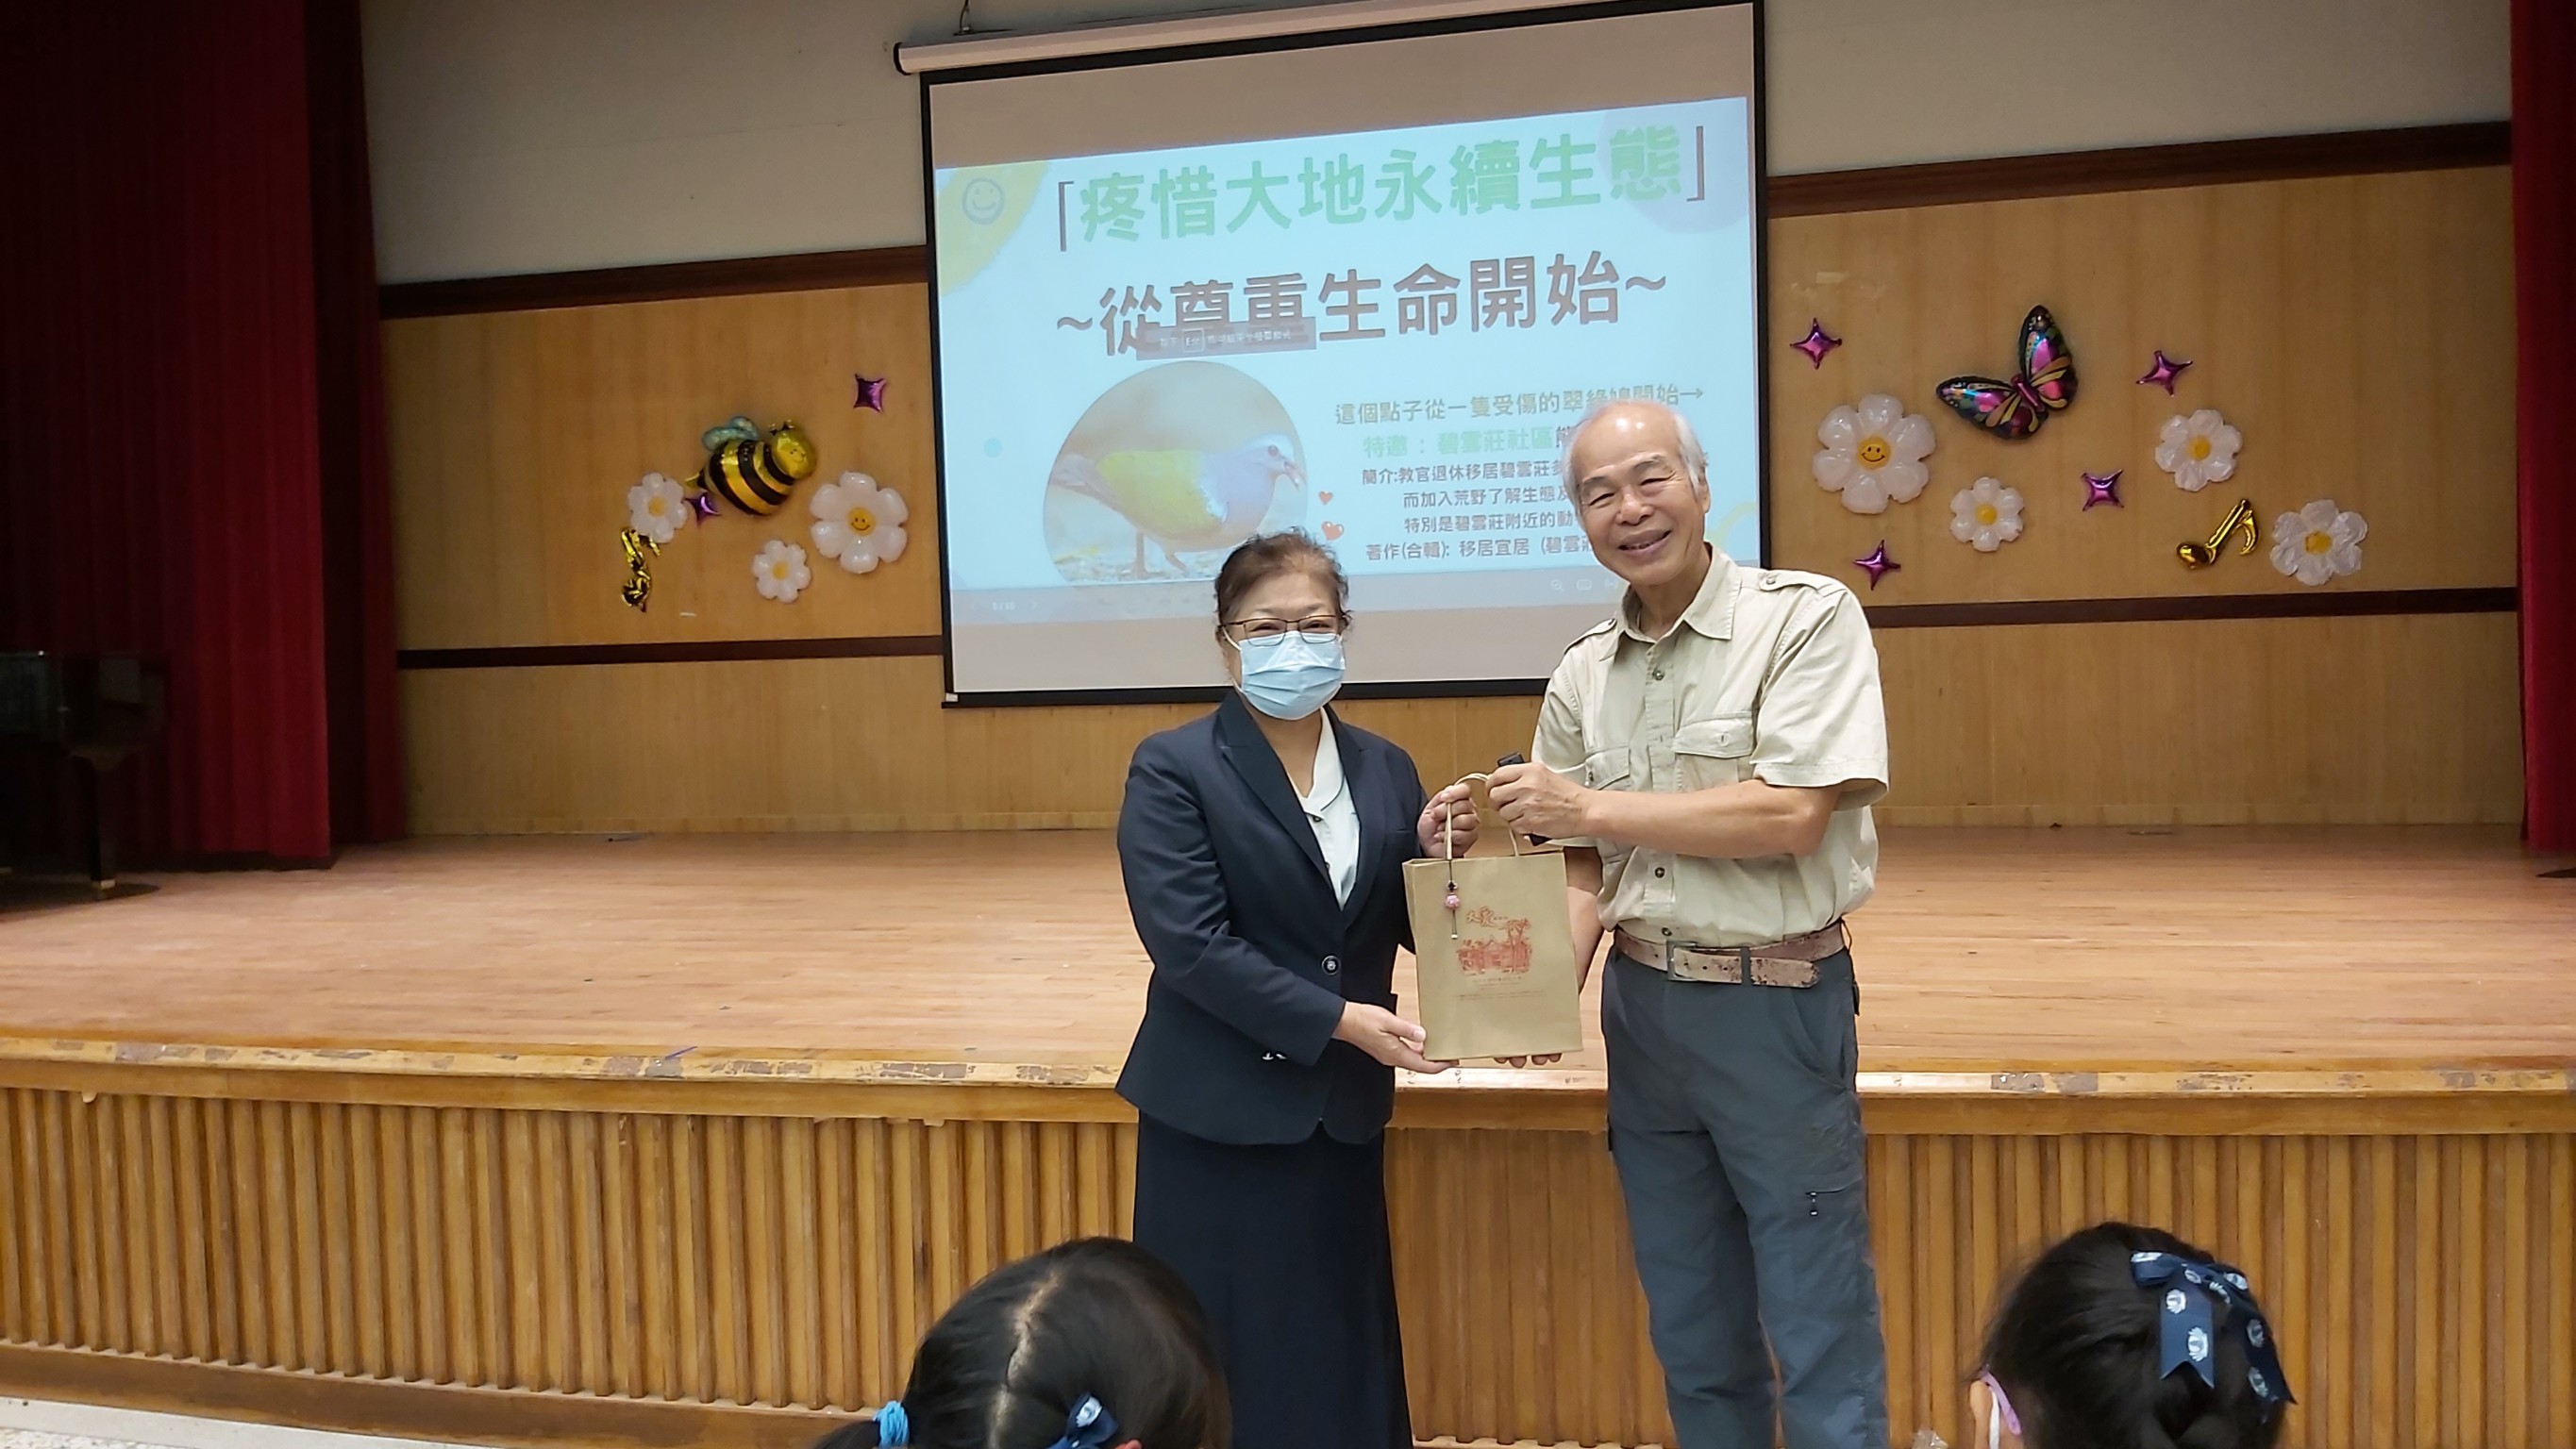 校長致贈結緣品感謝熊野爺的分享，熊野爺感動學生的表現，表示願意再到慈小分享。